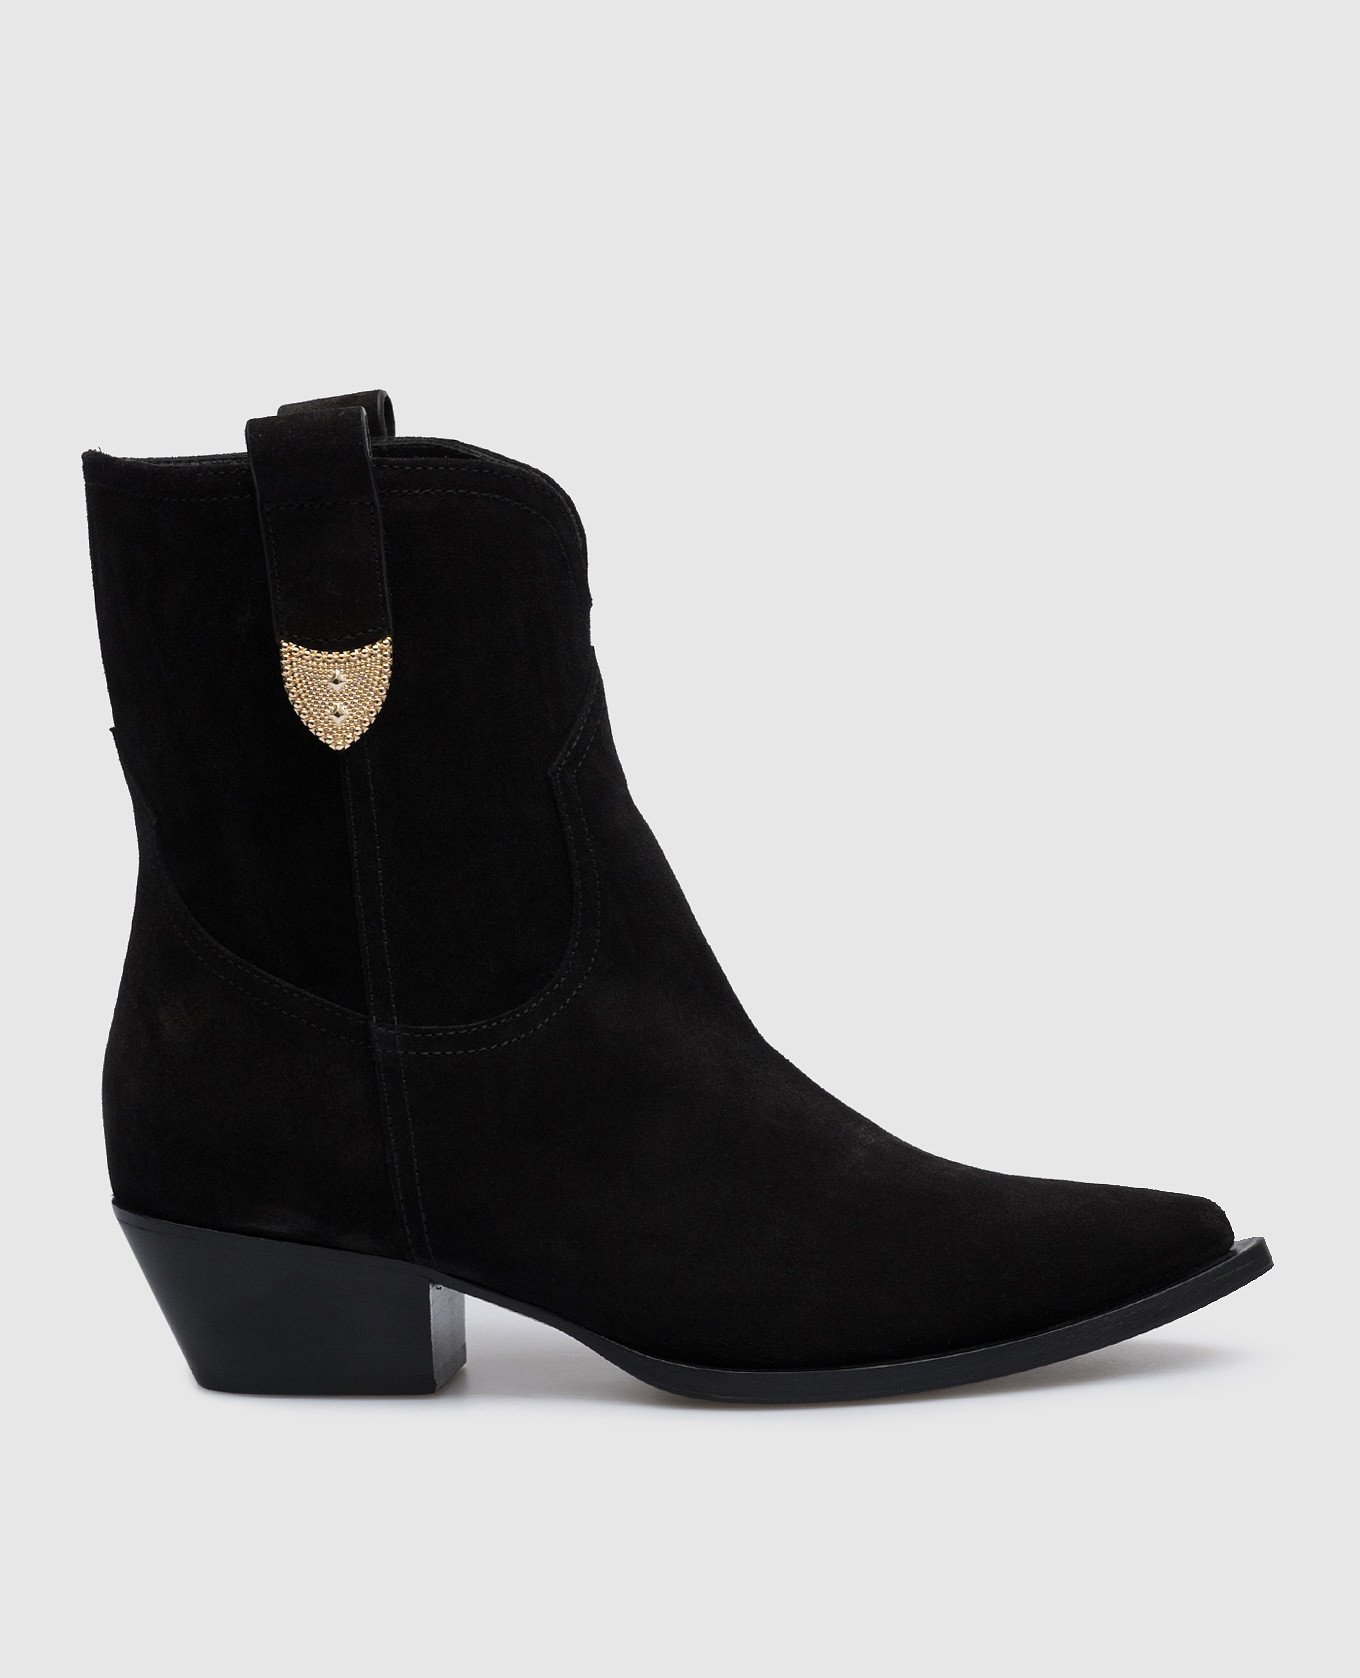 Paris black suede boots with metal details